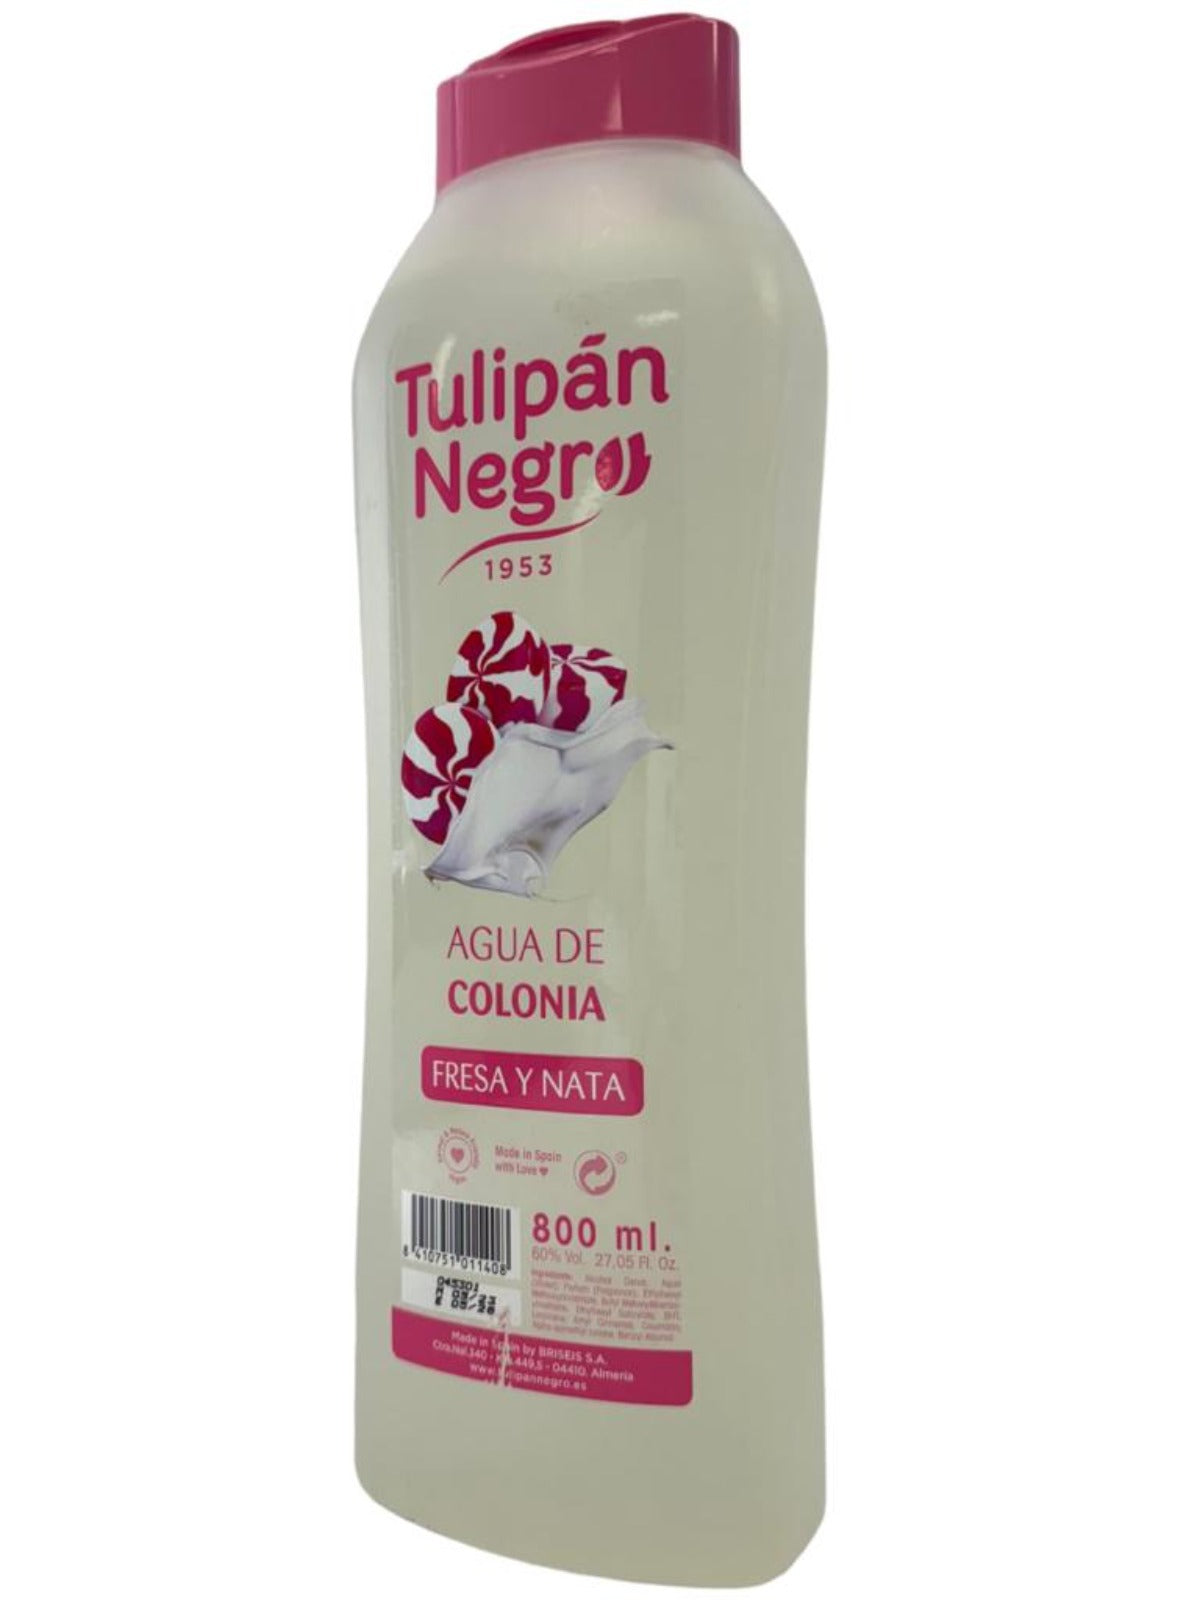 Tulipan Negro Strawberry and Cream Agua De Colonia Spanish Cologne Water 800ml